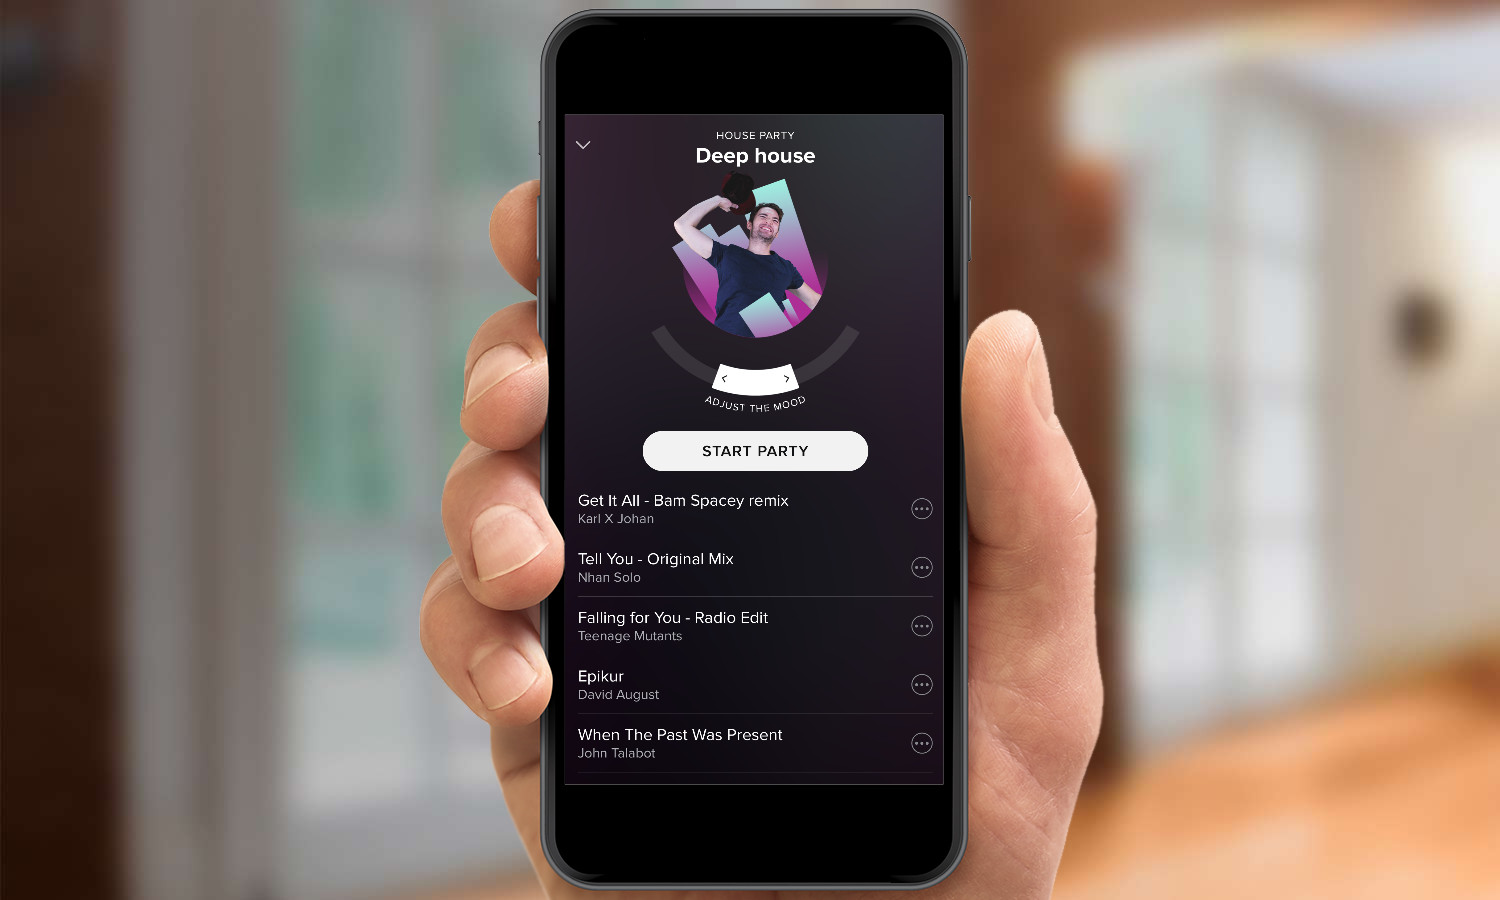 Spotify playlist bild ändern